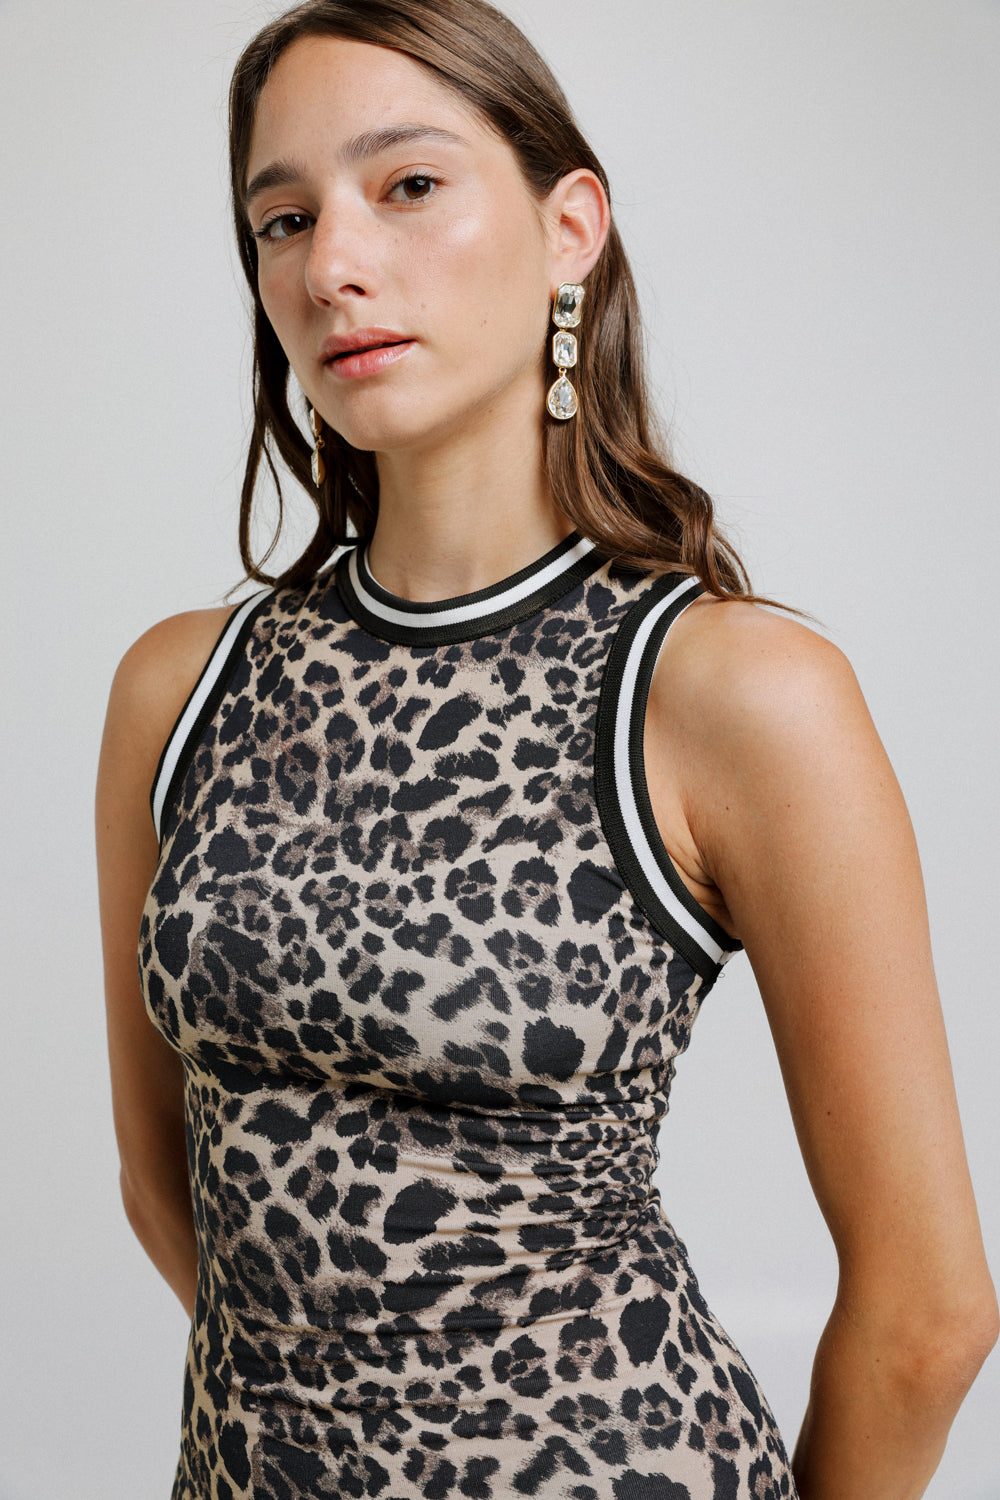 שמלת מקסי מנומרת לנשים דגם Taken Leopard Dress